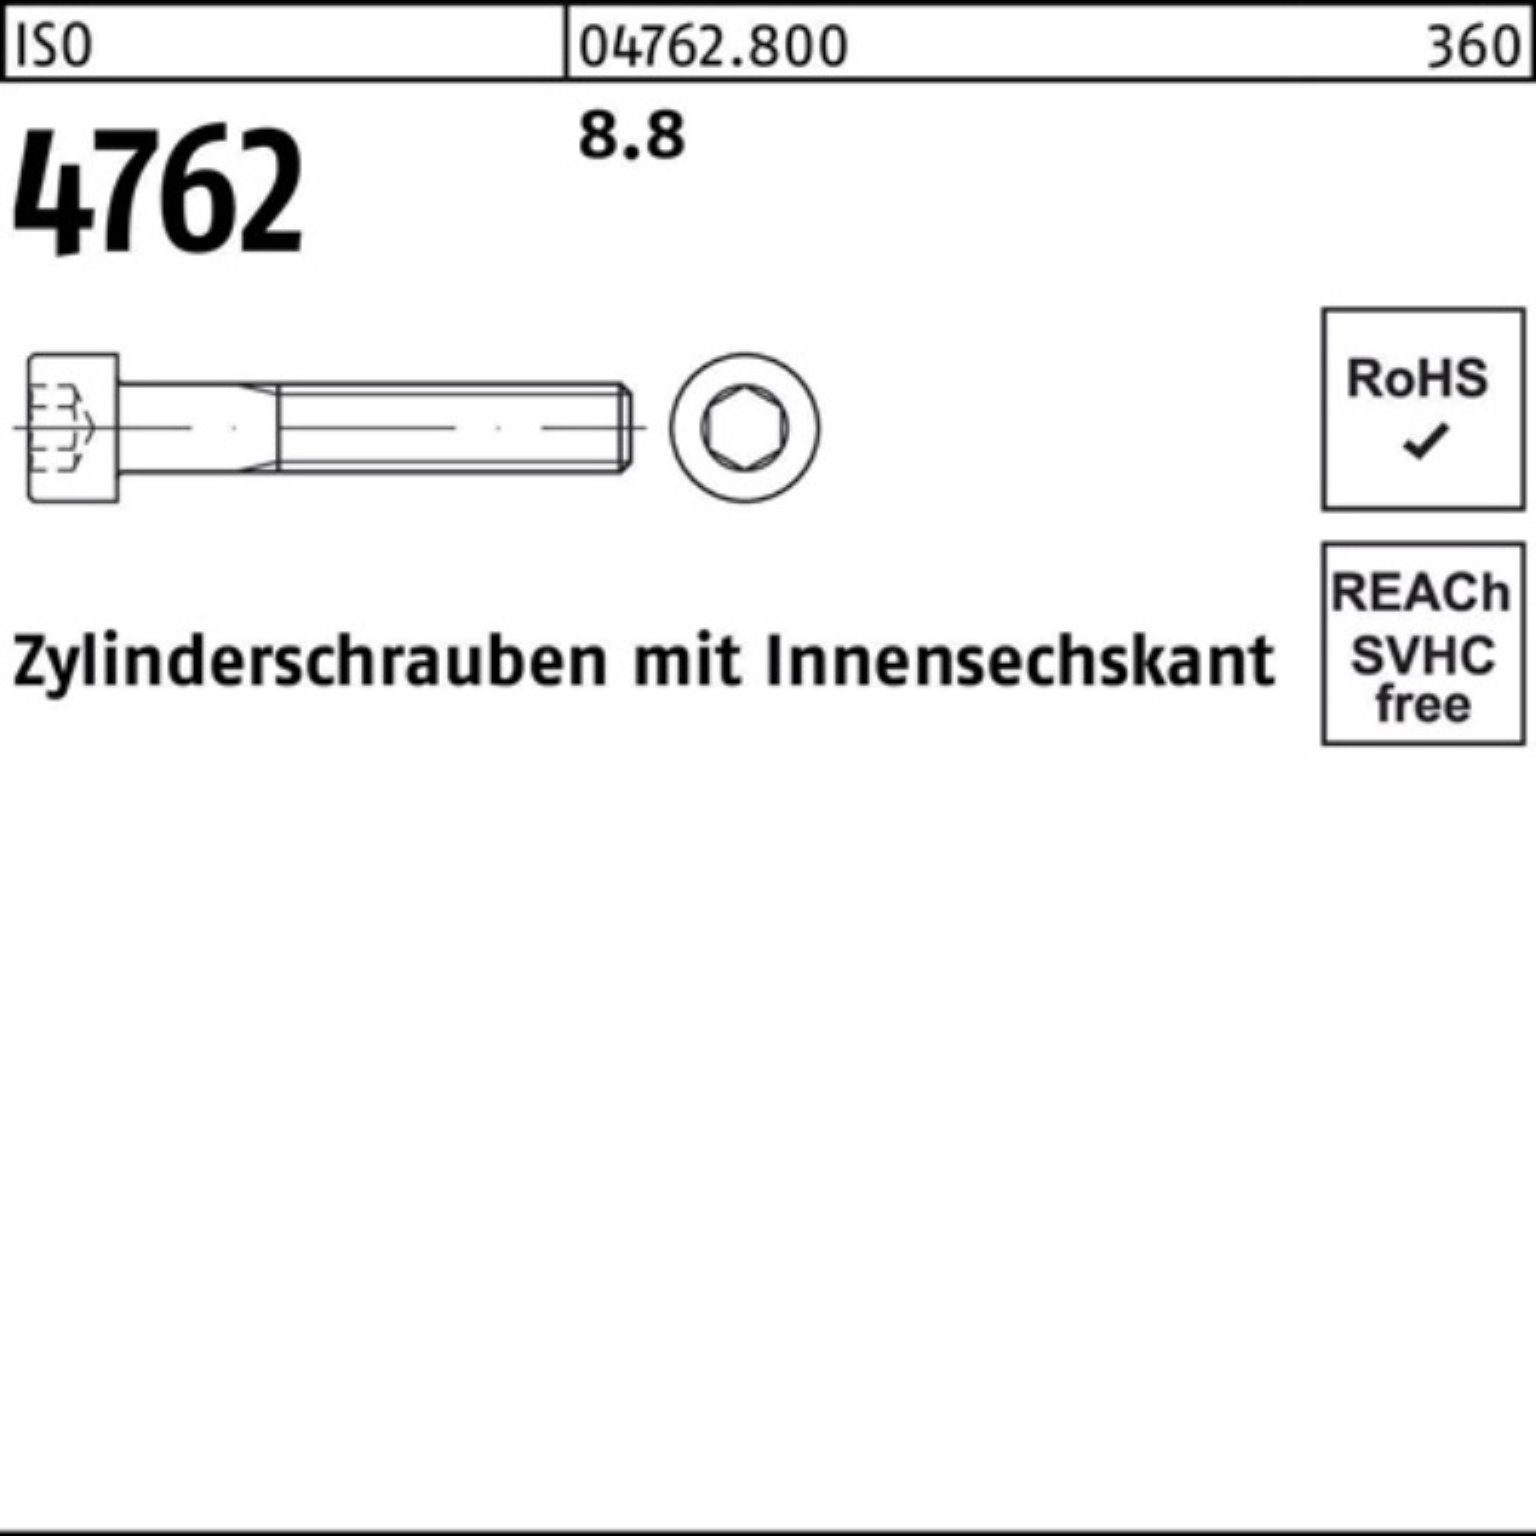 Stück ISO Zylinderschraube I Reyher Zylinderschraube Pack 200er 8.8 4762 M4x Innen-6kt 55 200